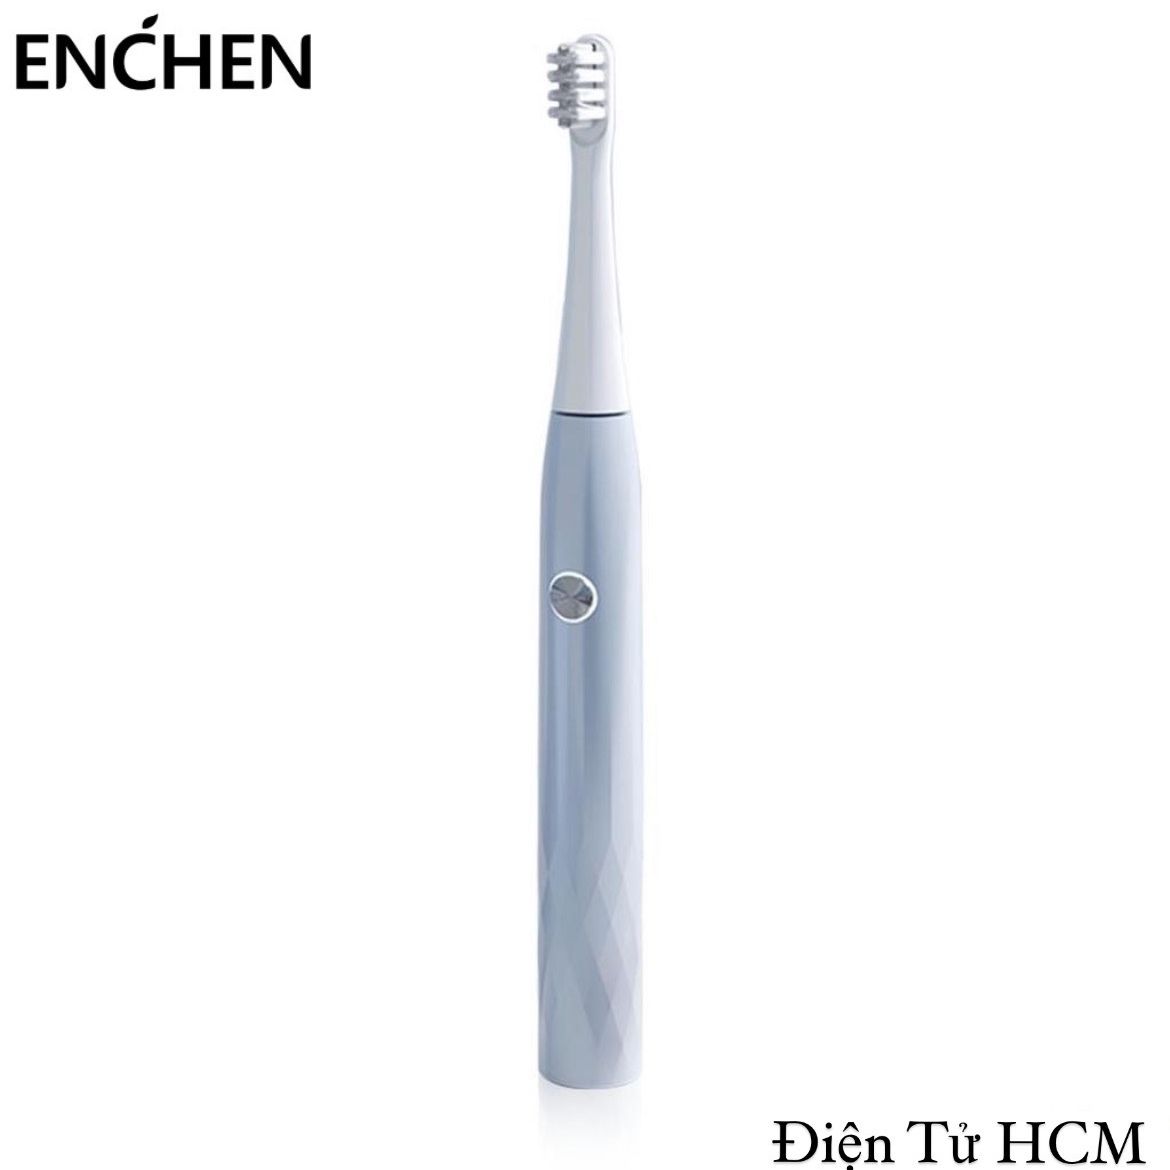 Bàn chải đánh răng điện Enchen T501 xanh nhạt với 3 chế độ làm sạch